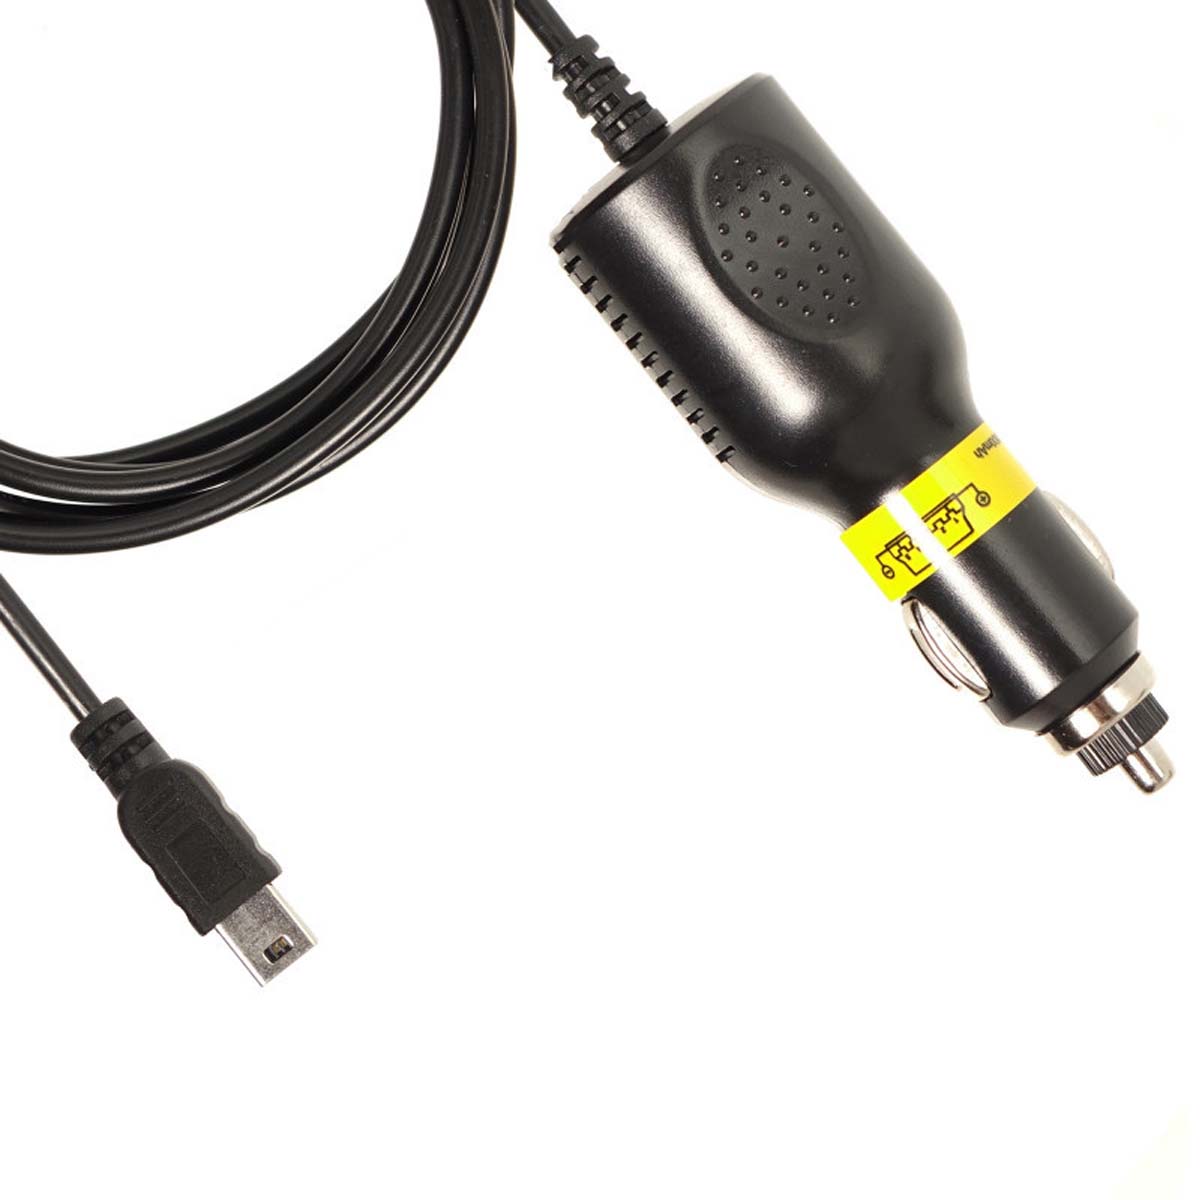 АЗУ (Автомобильное зарядное устройство) LP5 V3 с кабелем Mini USB, 2A, длина 1.5 метра, цвет черный